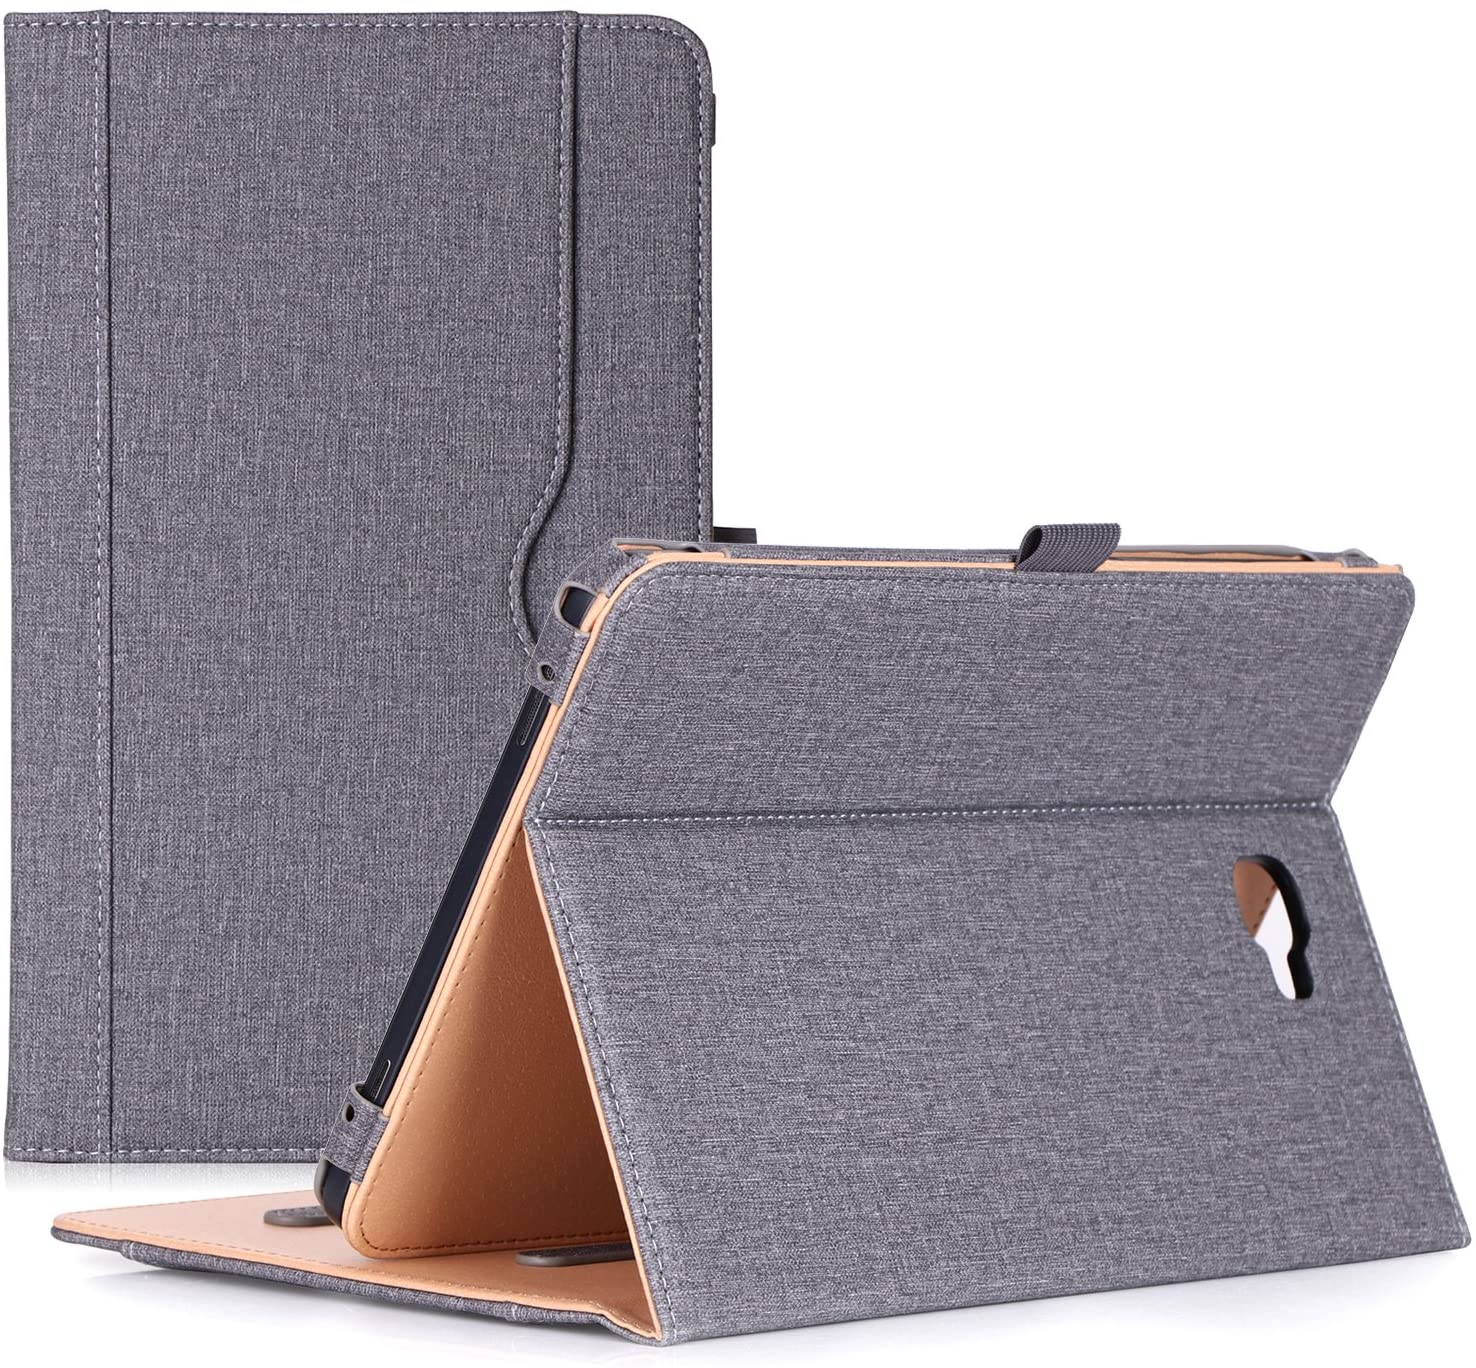 Galaxy Tab A 10.1 2016 T580 Leather Folio Case | ProCase grey